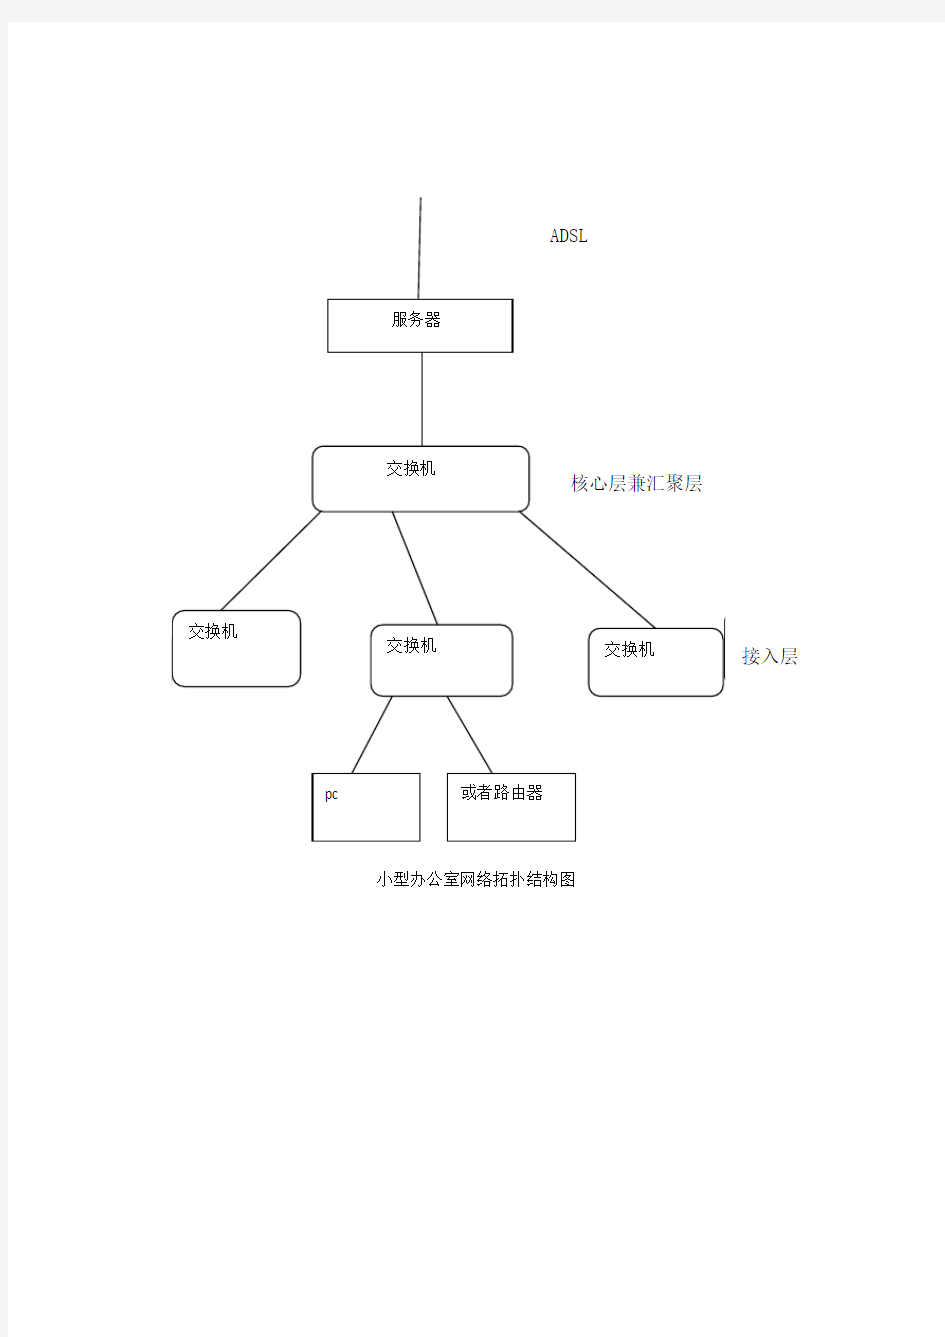 小型办公室局域网络拓扑结构图